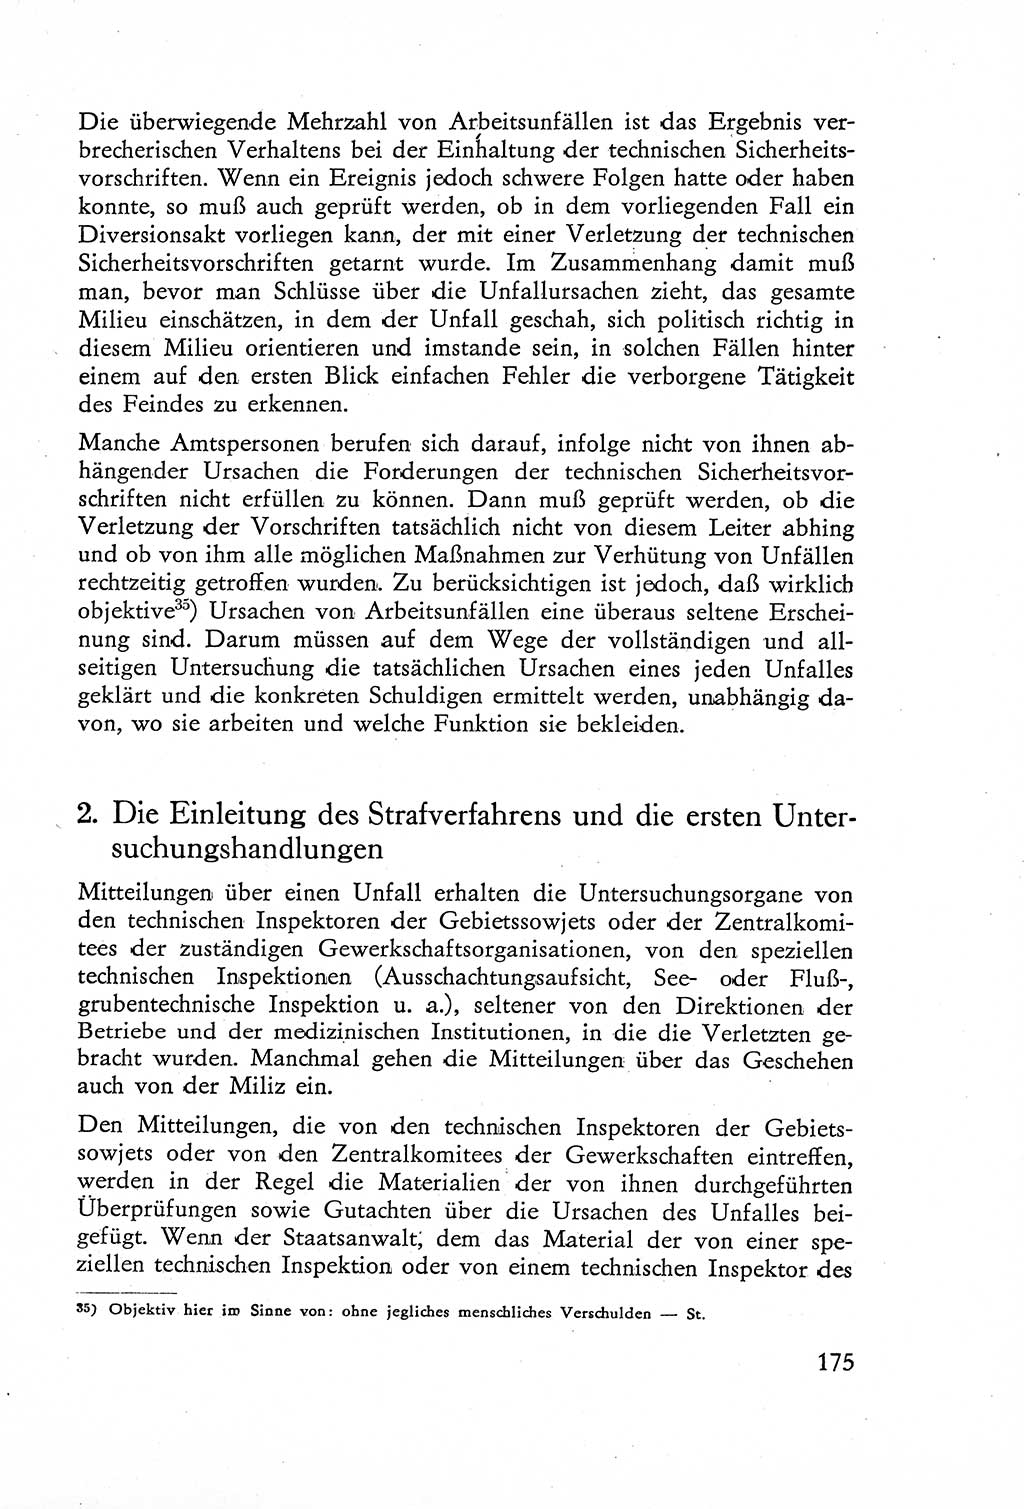 Die Untersuchung einzelner Verbrechensarten [Deutsche Demokratische Republik (DDR)] 1960, Seite 175 (Unters. Verbr.-Art. DDR 1960, S. 175)